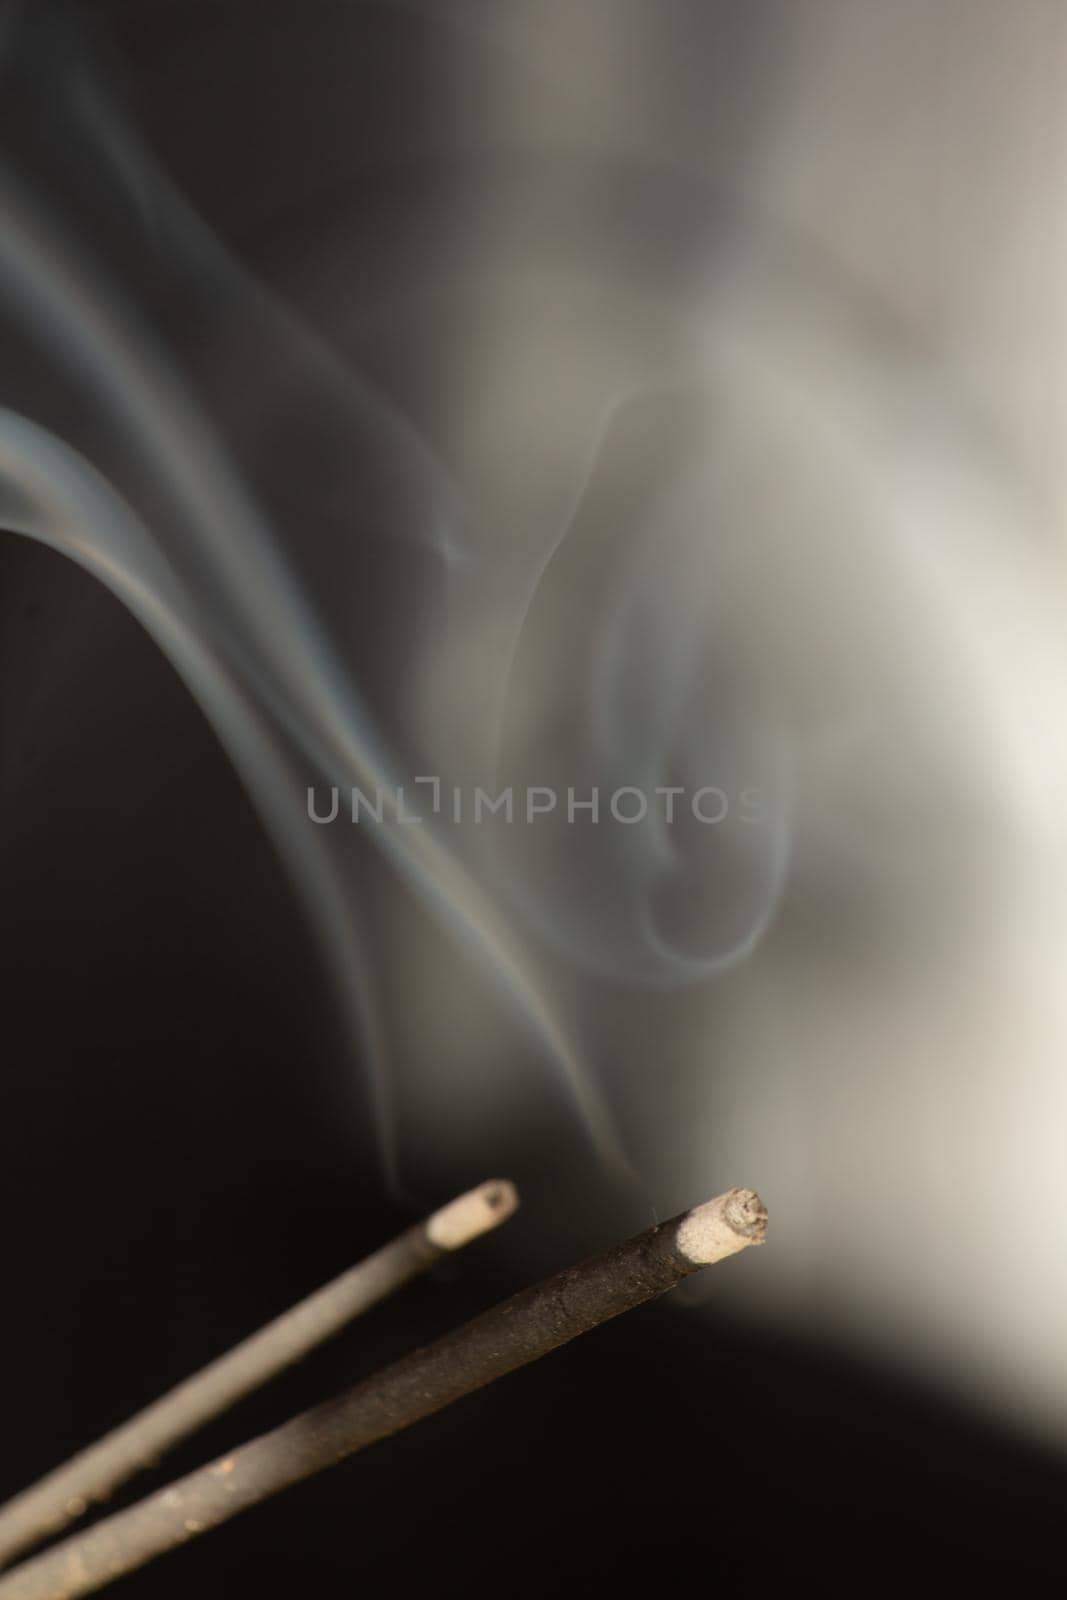 A close up asian aroma smoke stick by SorokinNikita